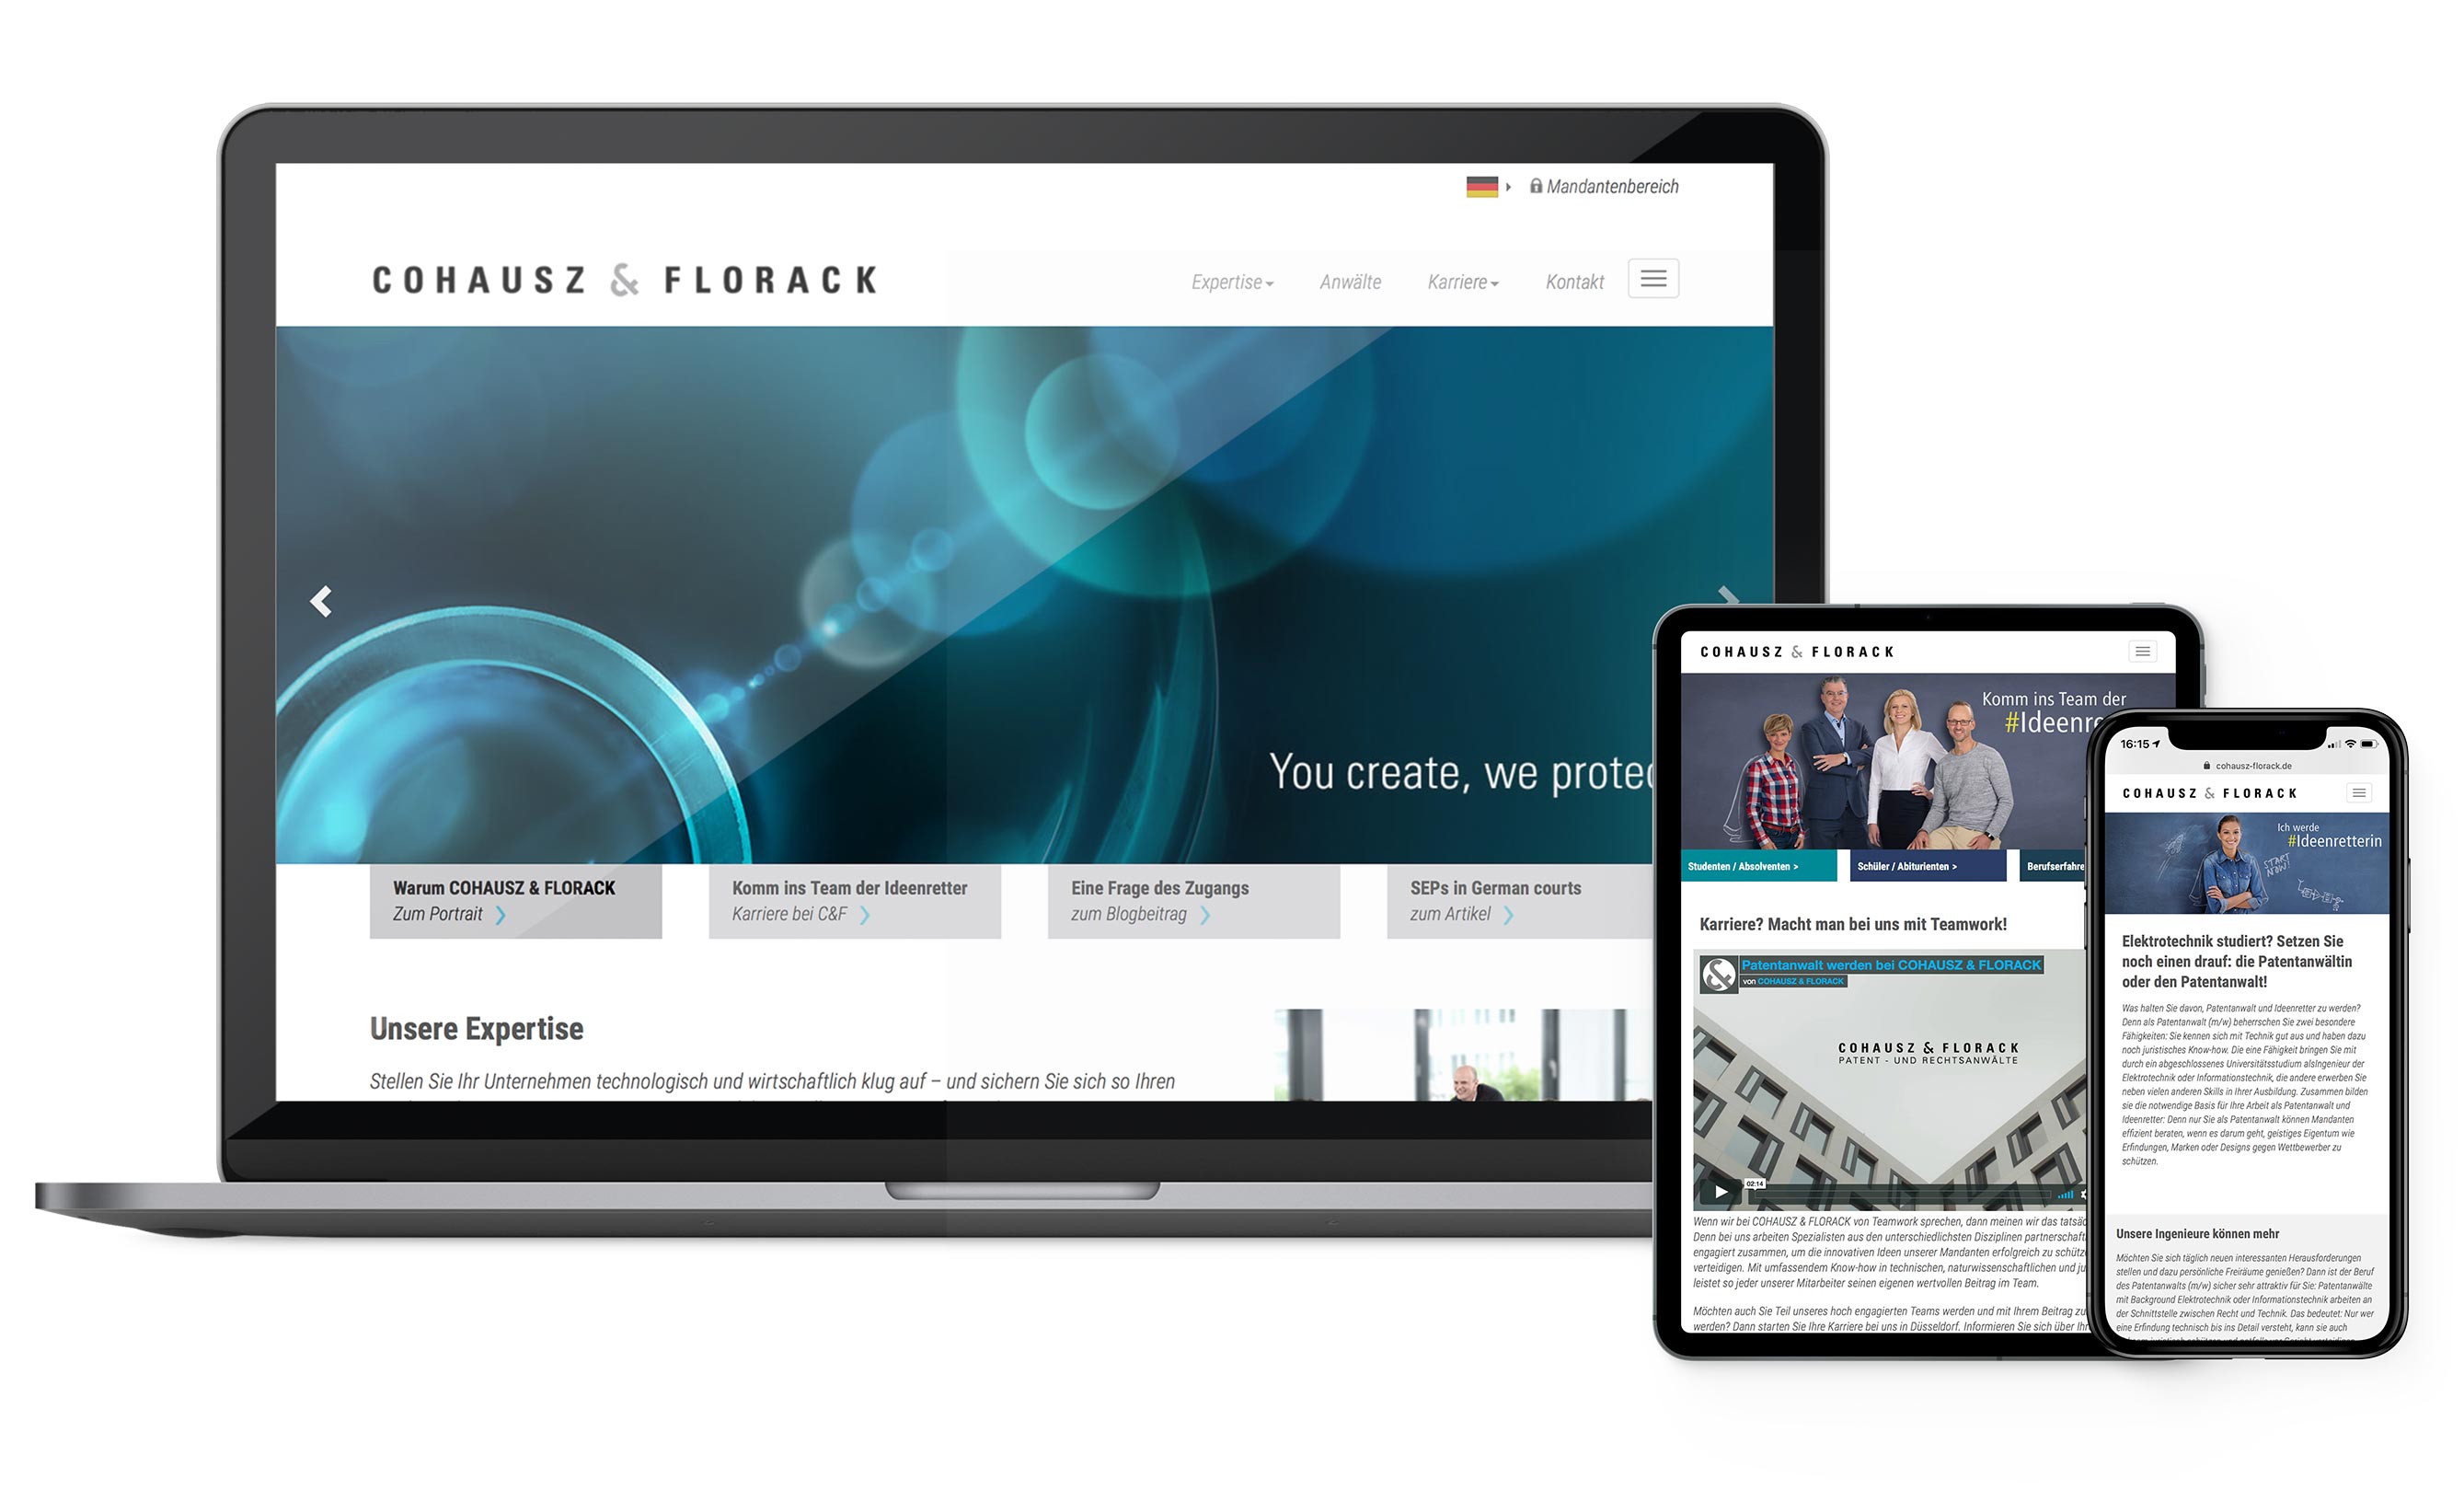 Darstellung der Websitegestaltung für Cohausz & Florack - Karriereseite, Landingpage, Responsive-Design